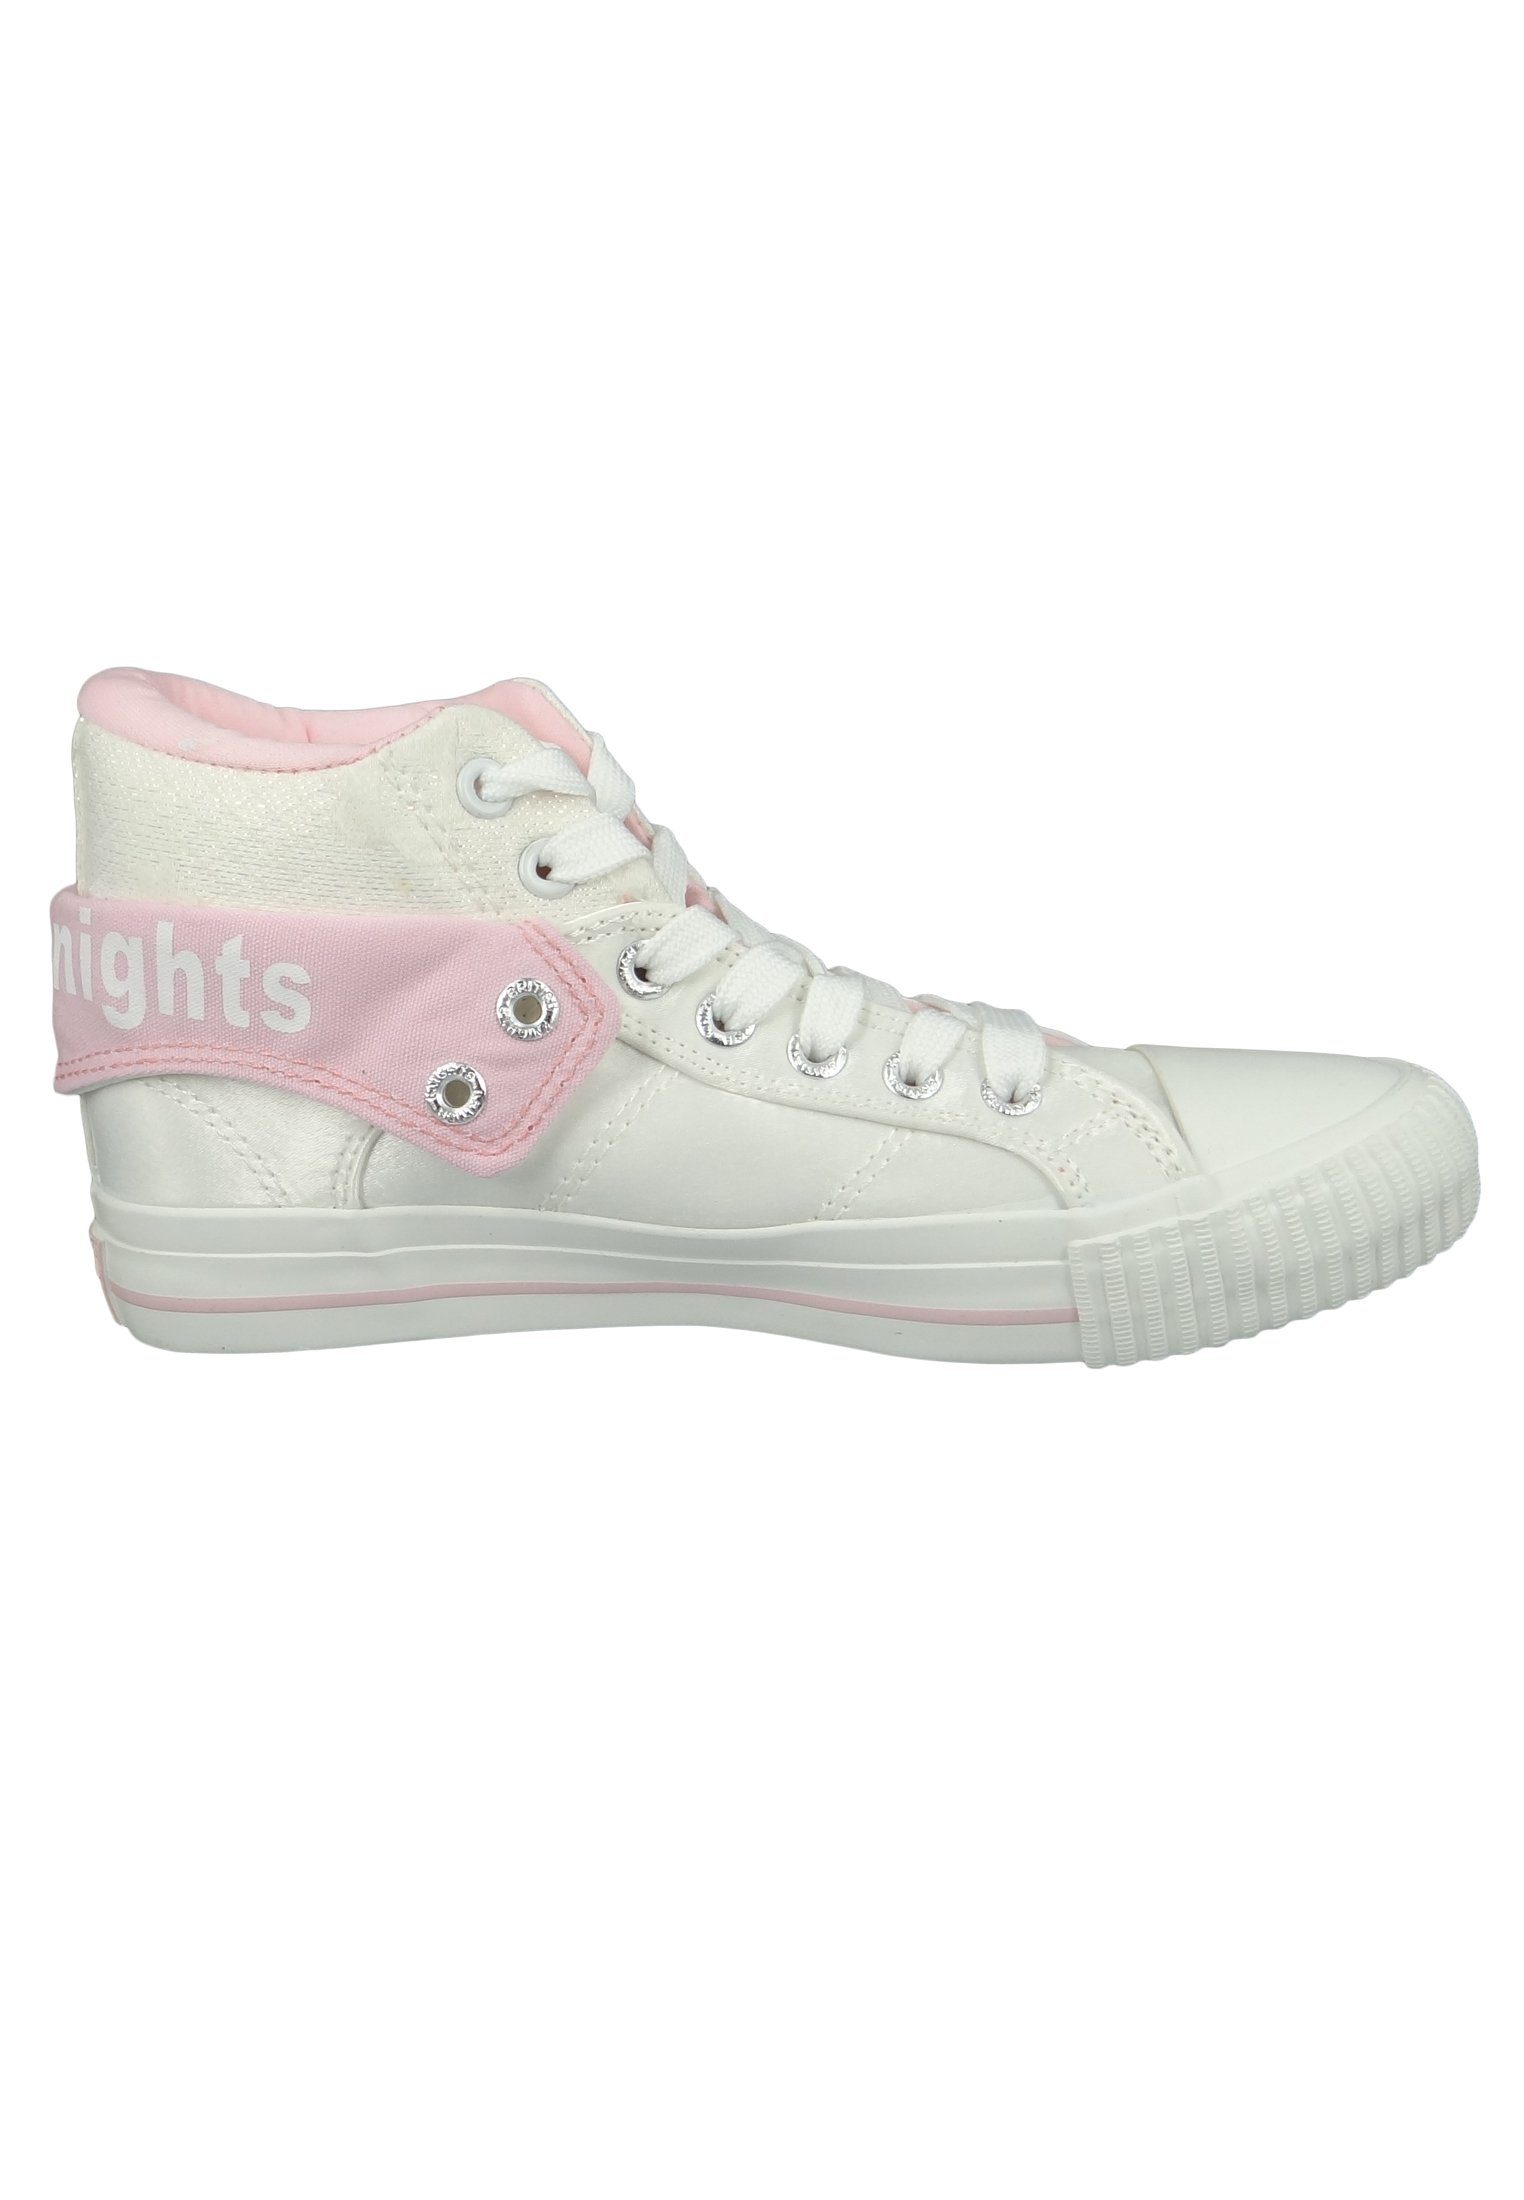 B43-3709-02 Pink Roco Flower Knights British White Sneaker